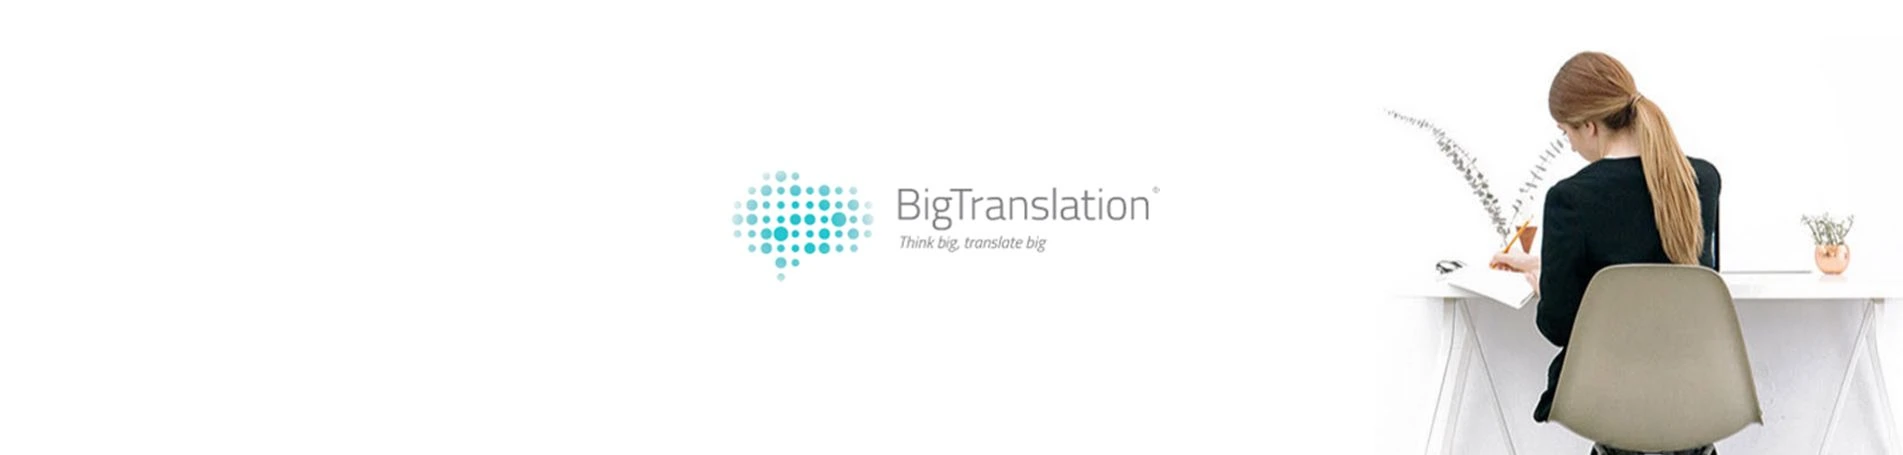 BigTranslation, partner corporativo de Lifting Group para la traducción SEO de contenidos